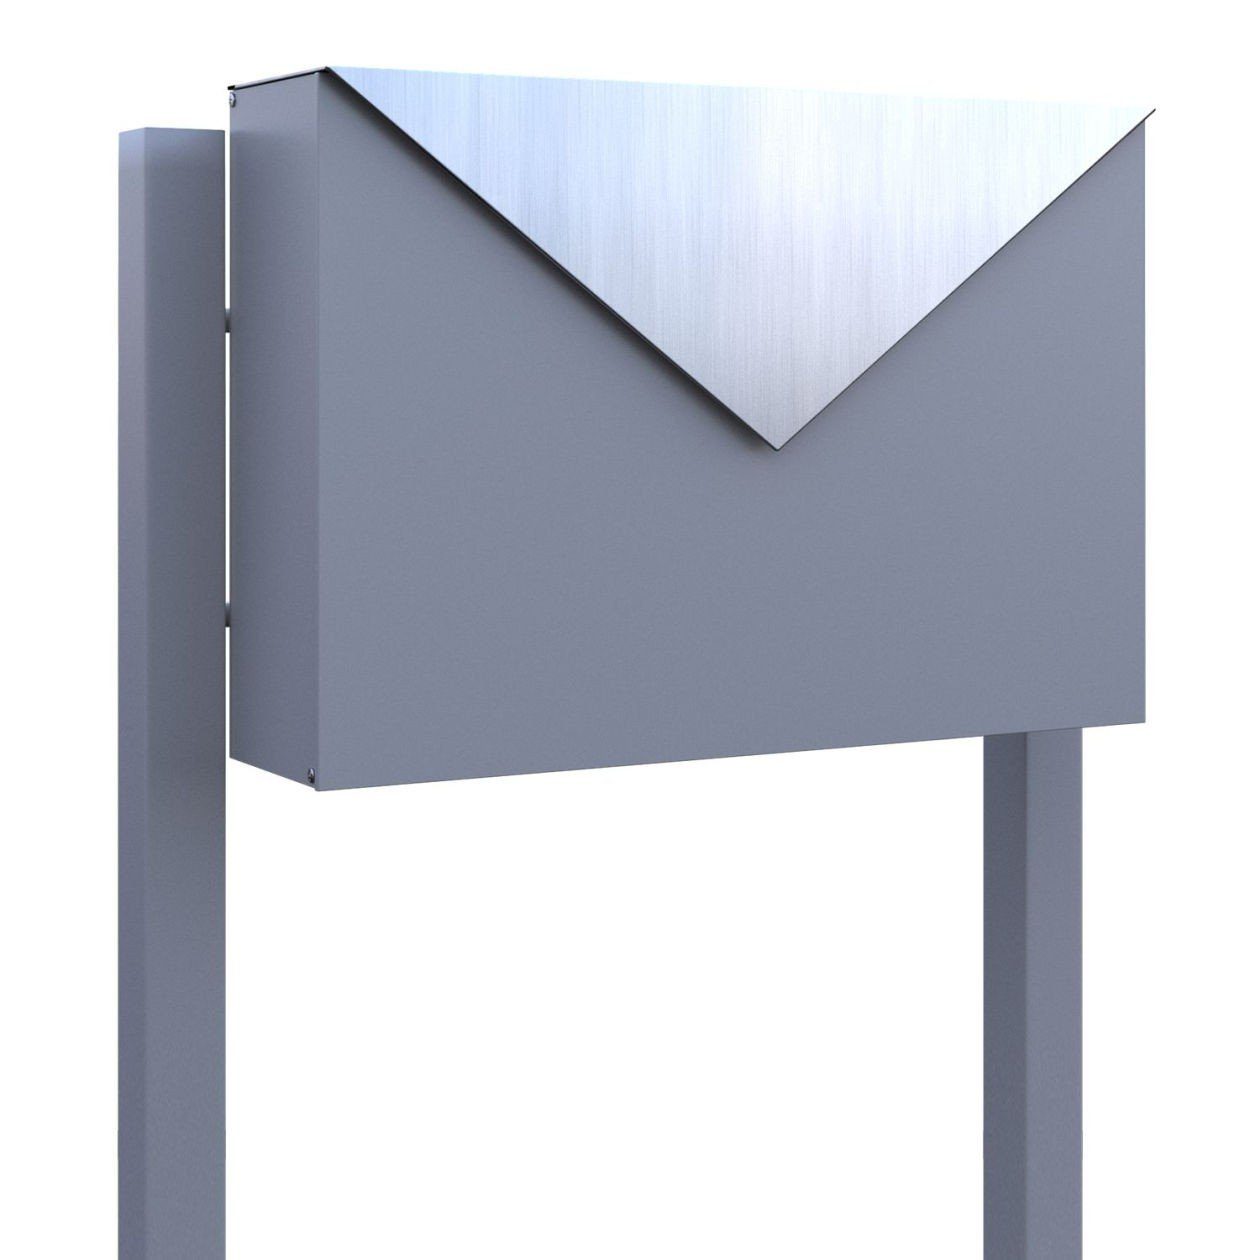 Bravios Briefkasten Standbriefkasten Letter Grau Metallic mit Edelsta